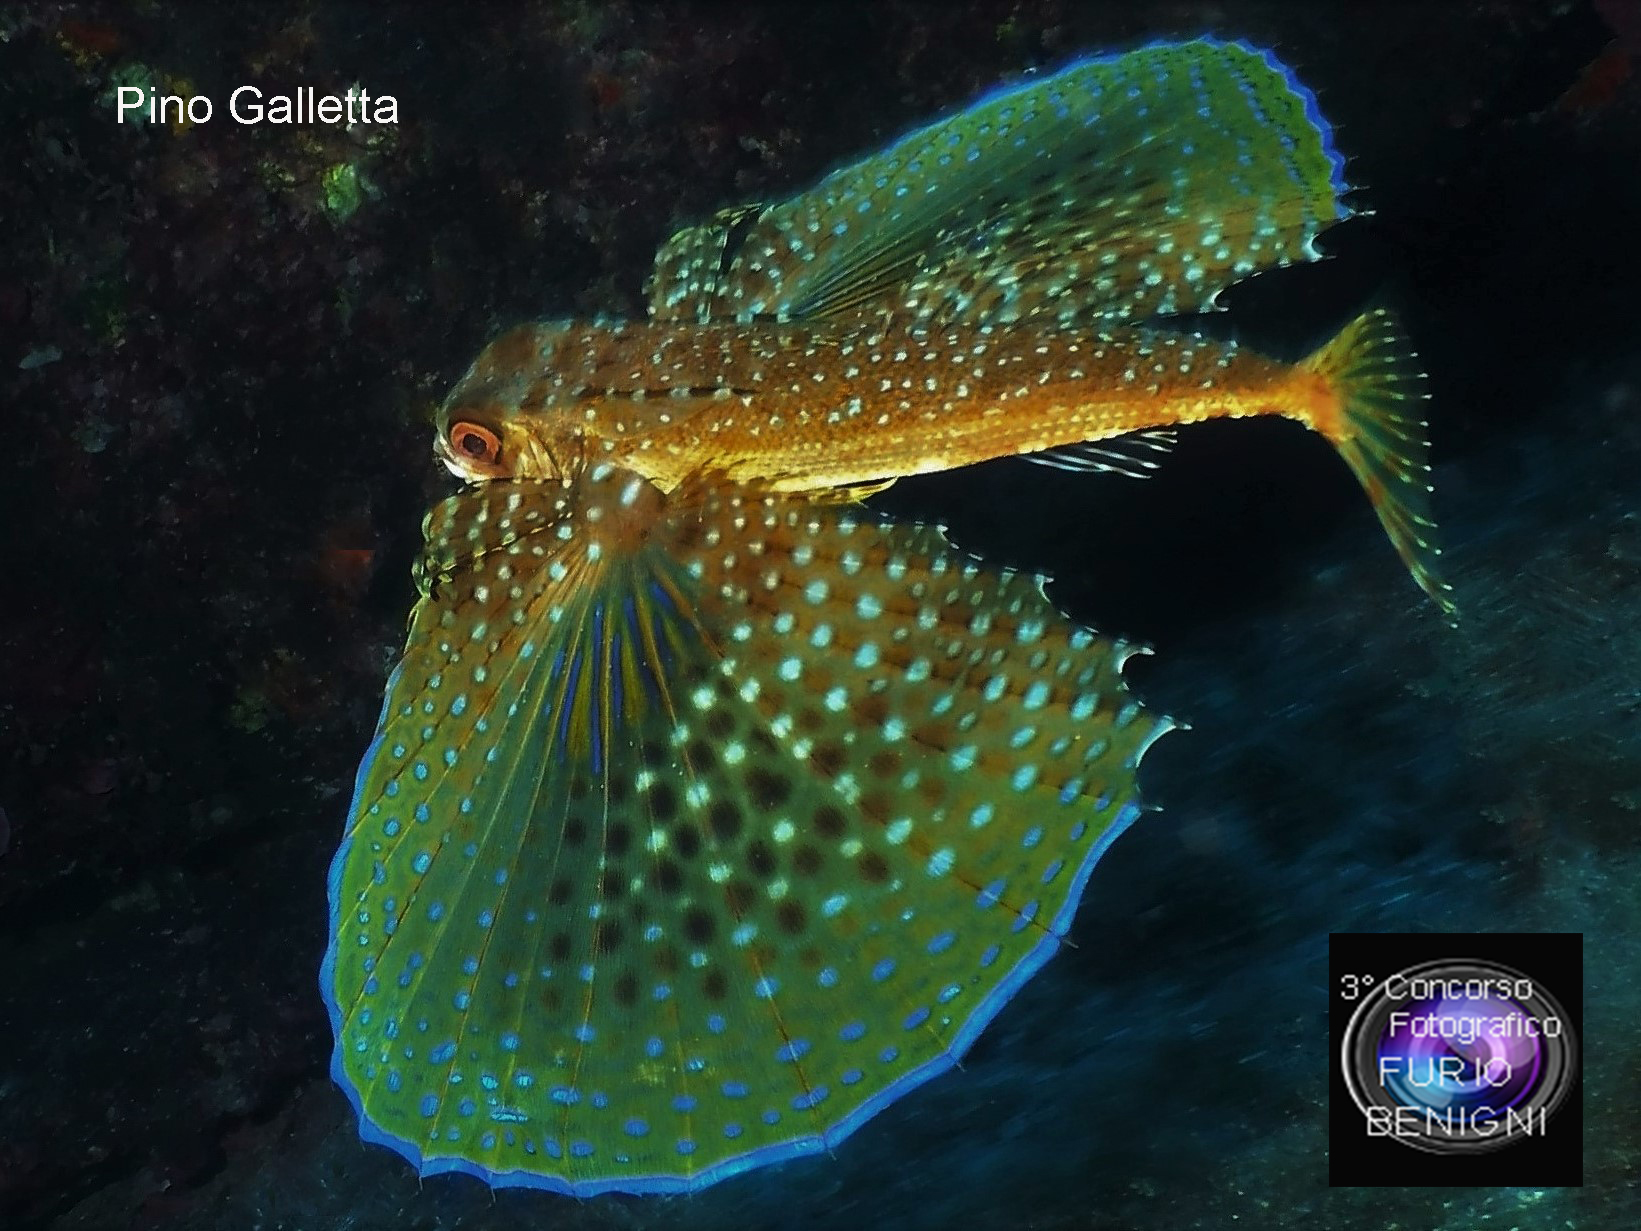 subacquea, Concorso Fotografico Furio Benigni - PINO GALLETTA, Dactylopterus volitans